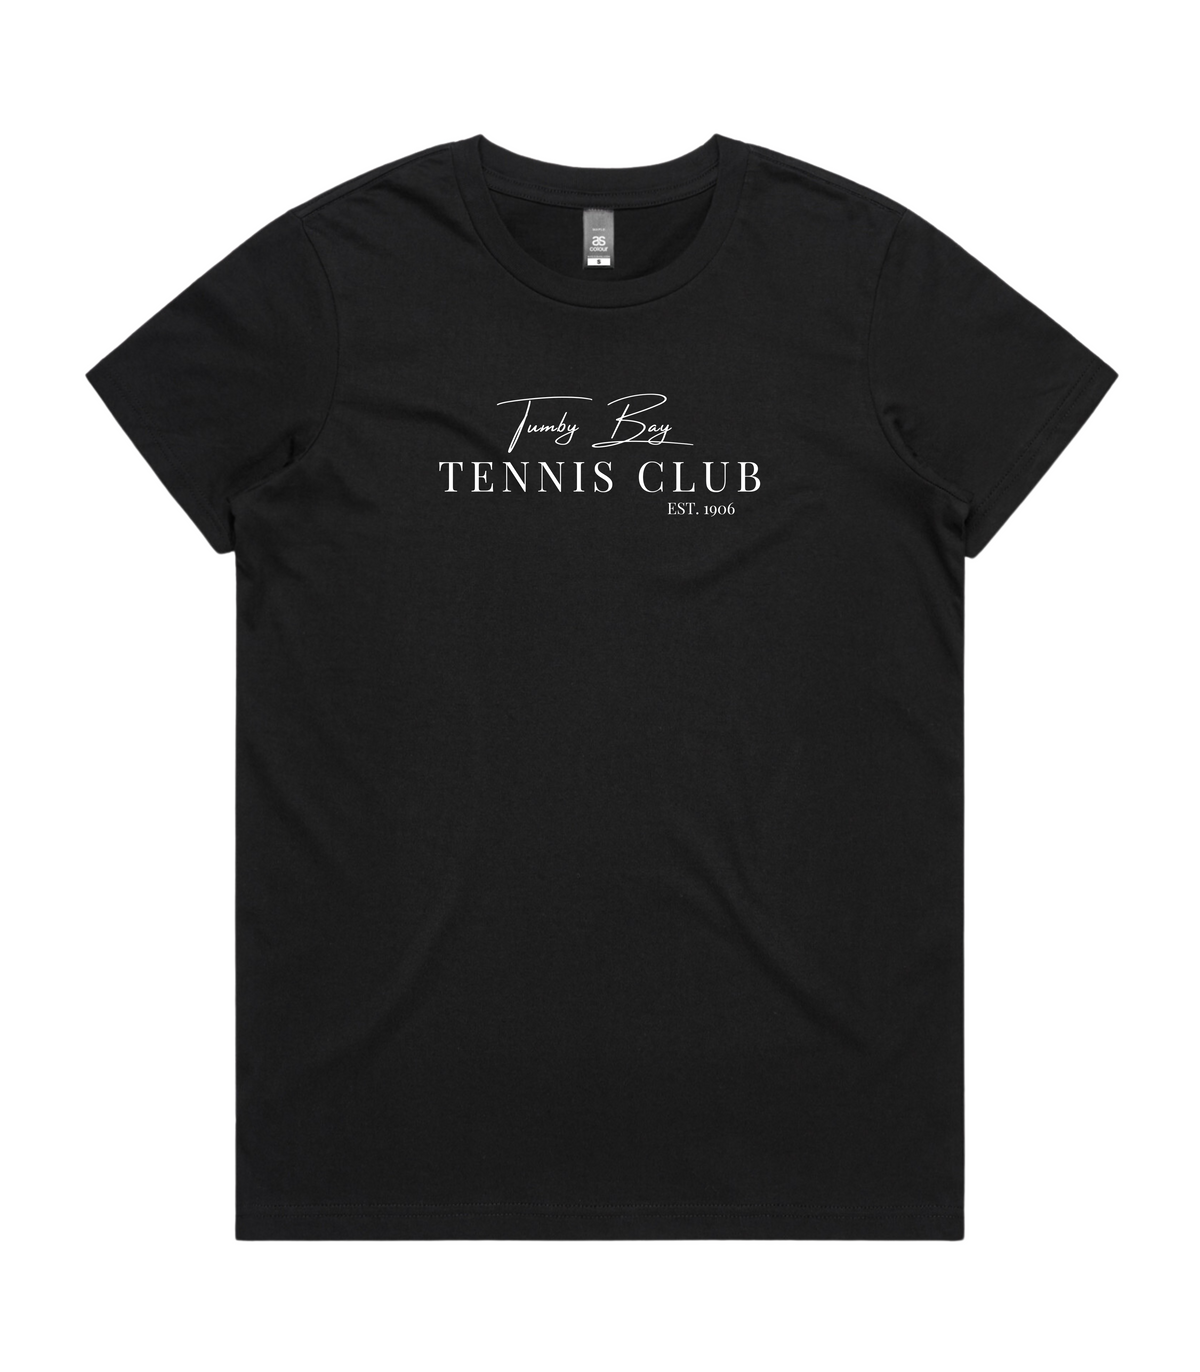 Tumby Bay Tennis Club Womens Maple Tee 4001